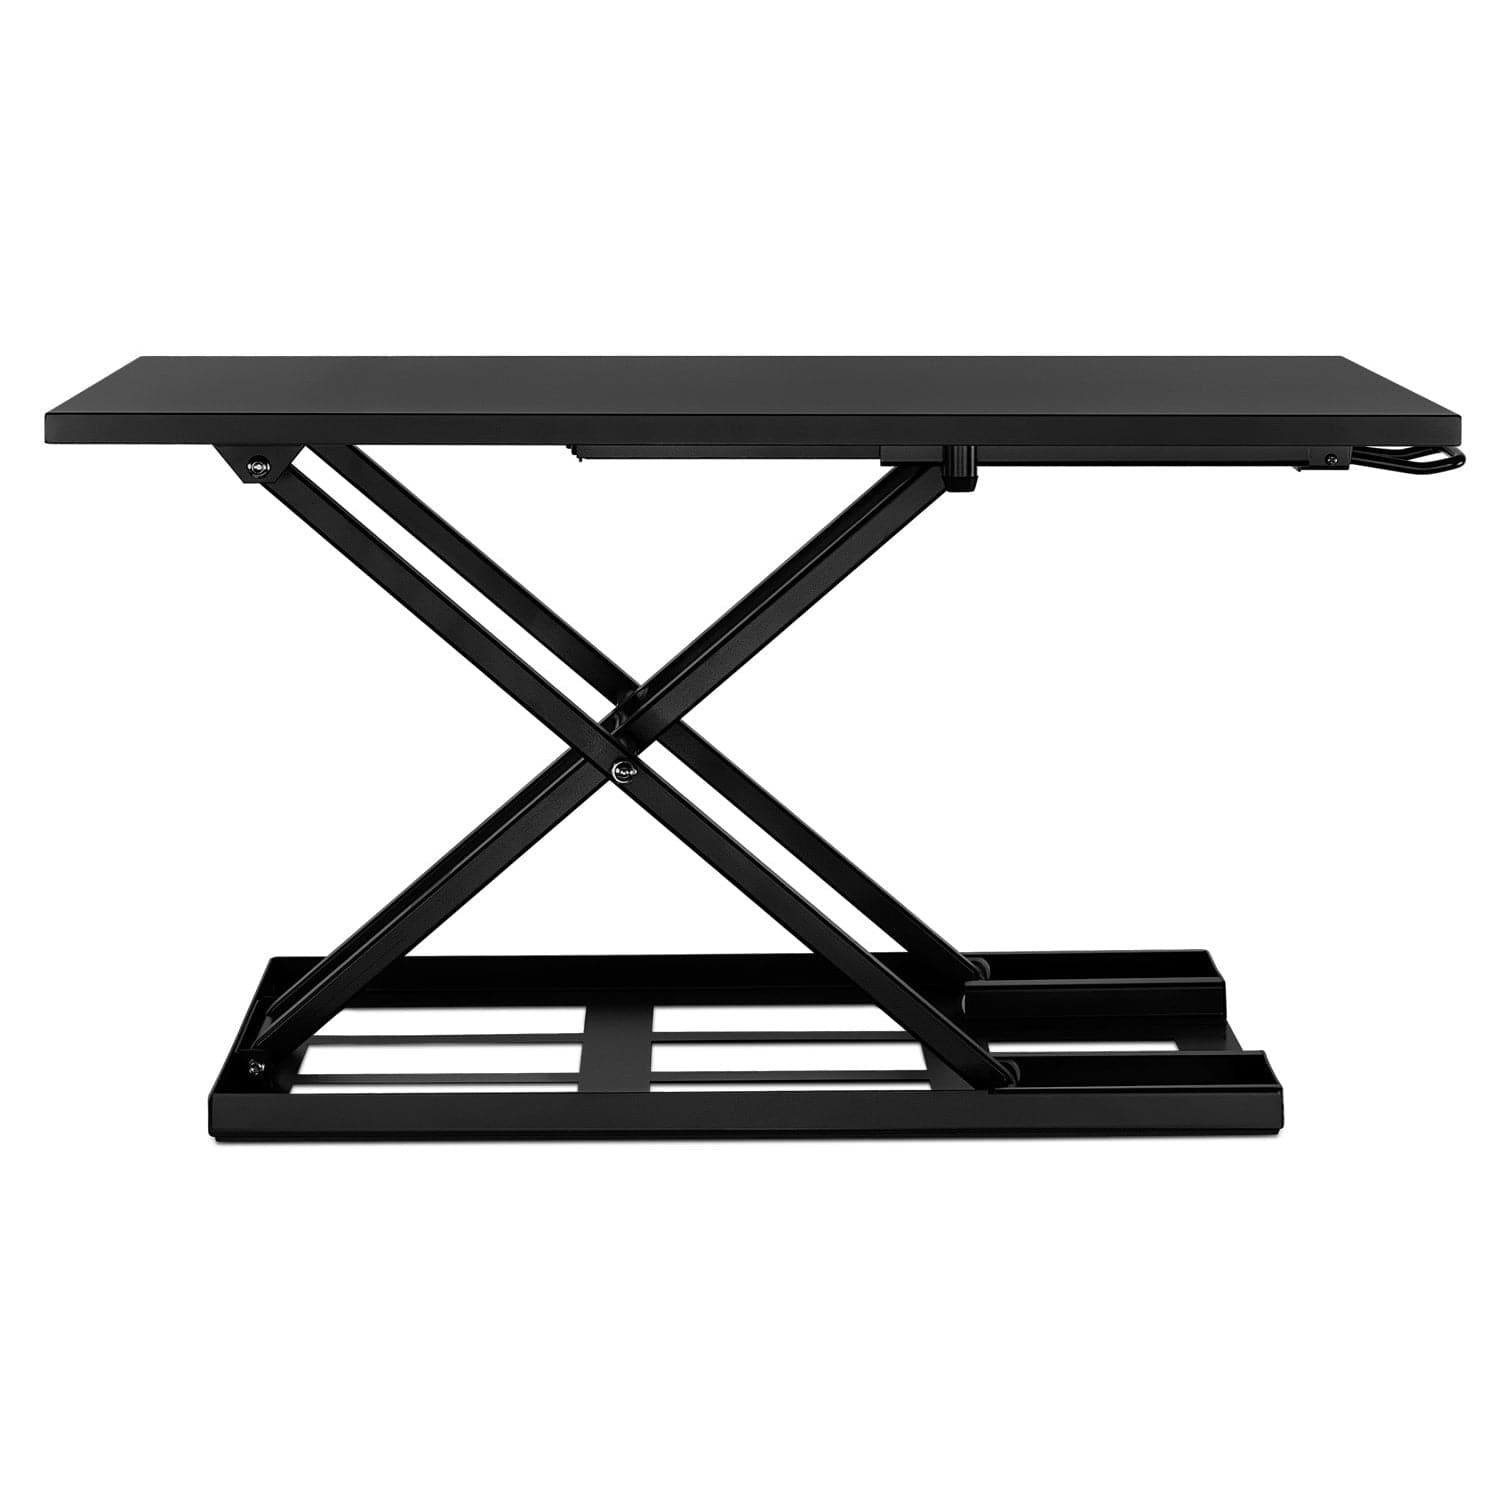 MOUNT-IT! 35.5 in. Black Standing Desk Converter Height Adjustable